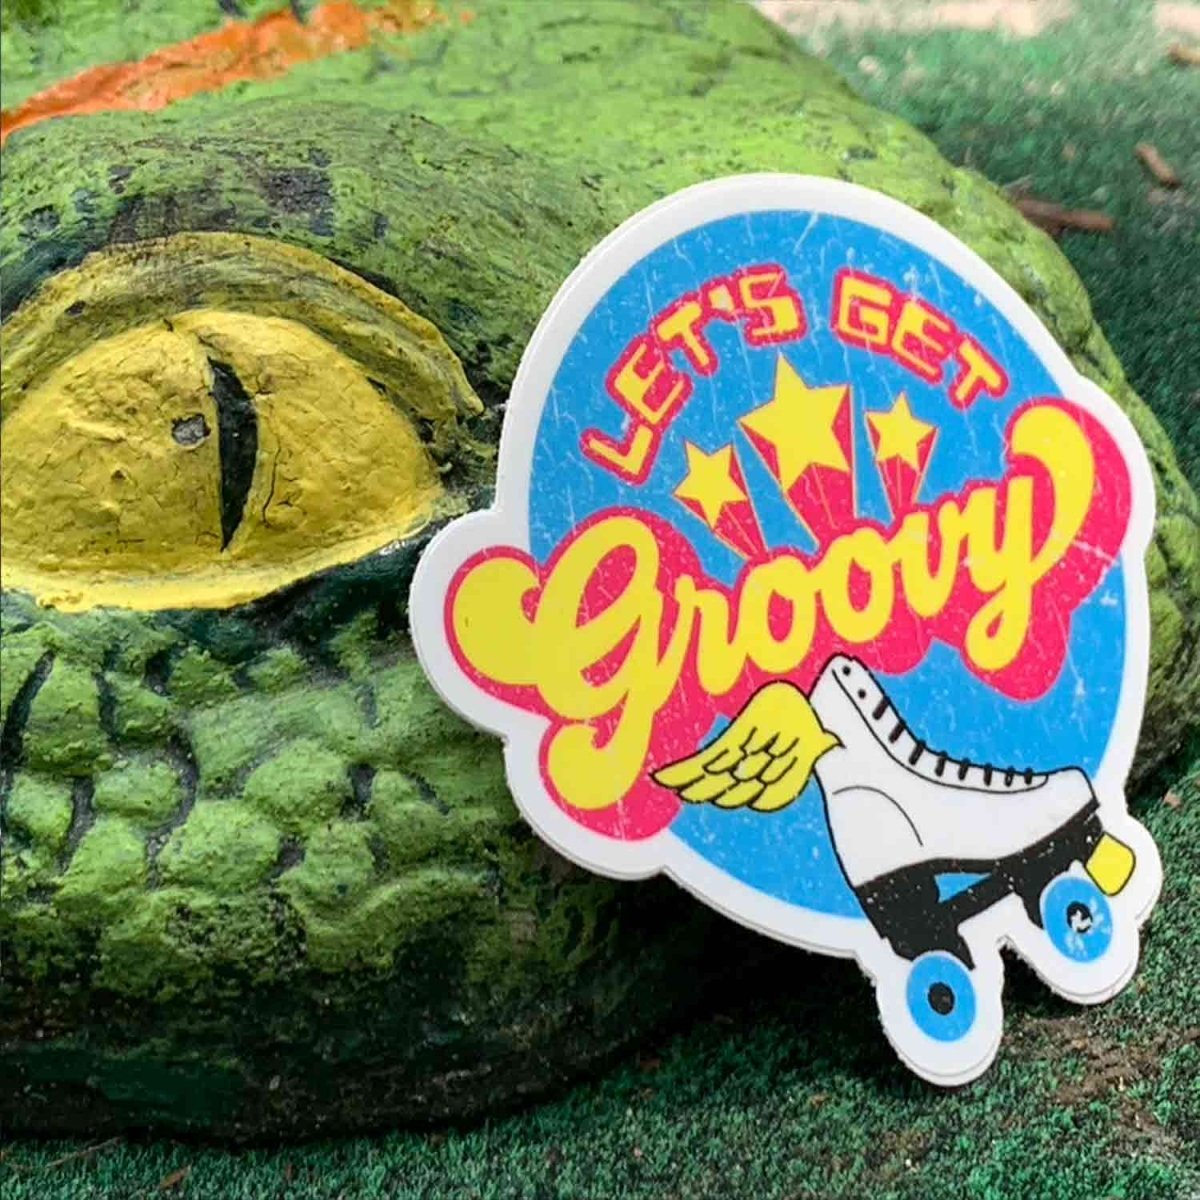 Let's Get Groovy Roller Skate - Premium Stickers, Magnets - Vintage Retro Roller Rink, Roller Derby